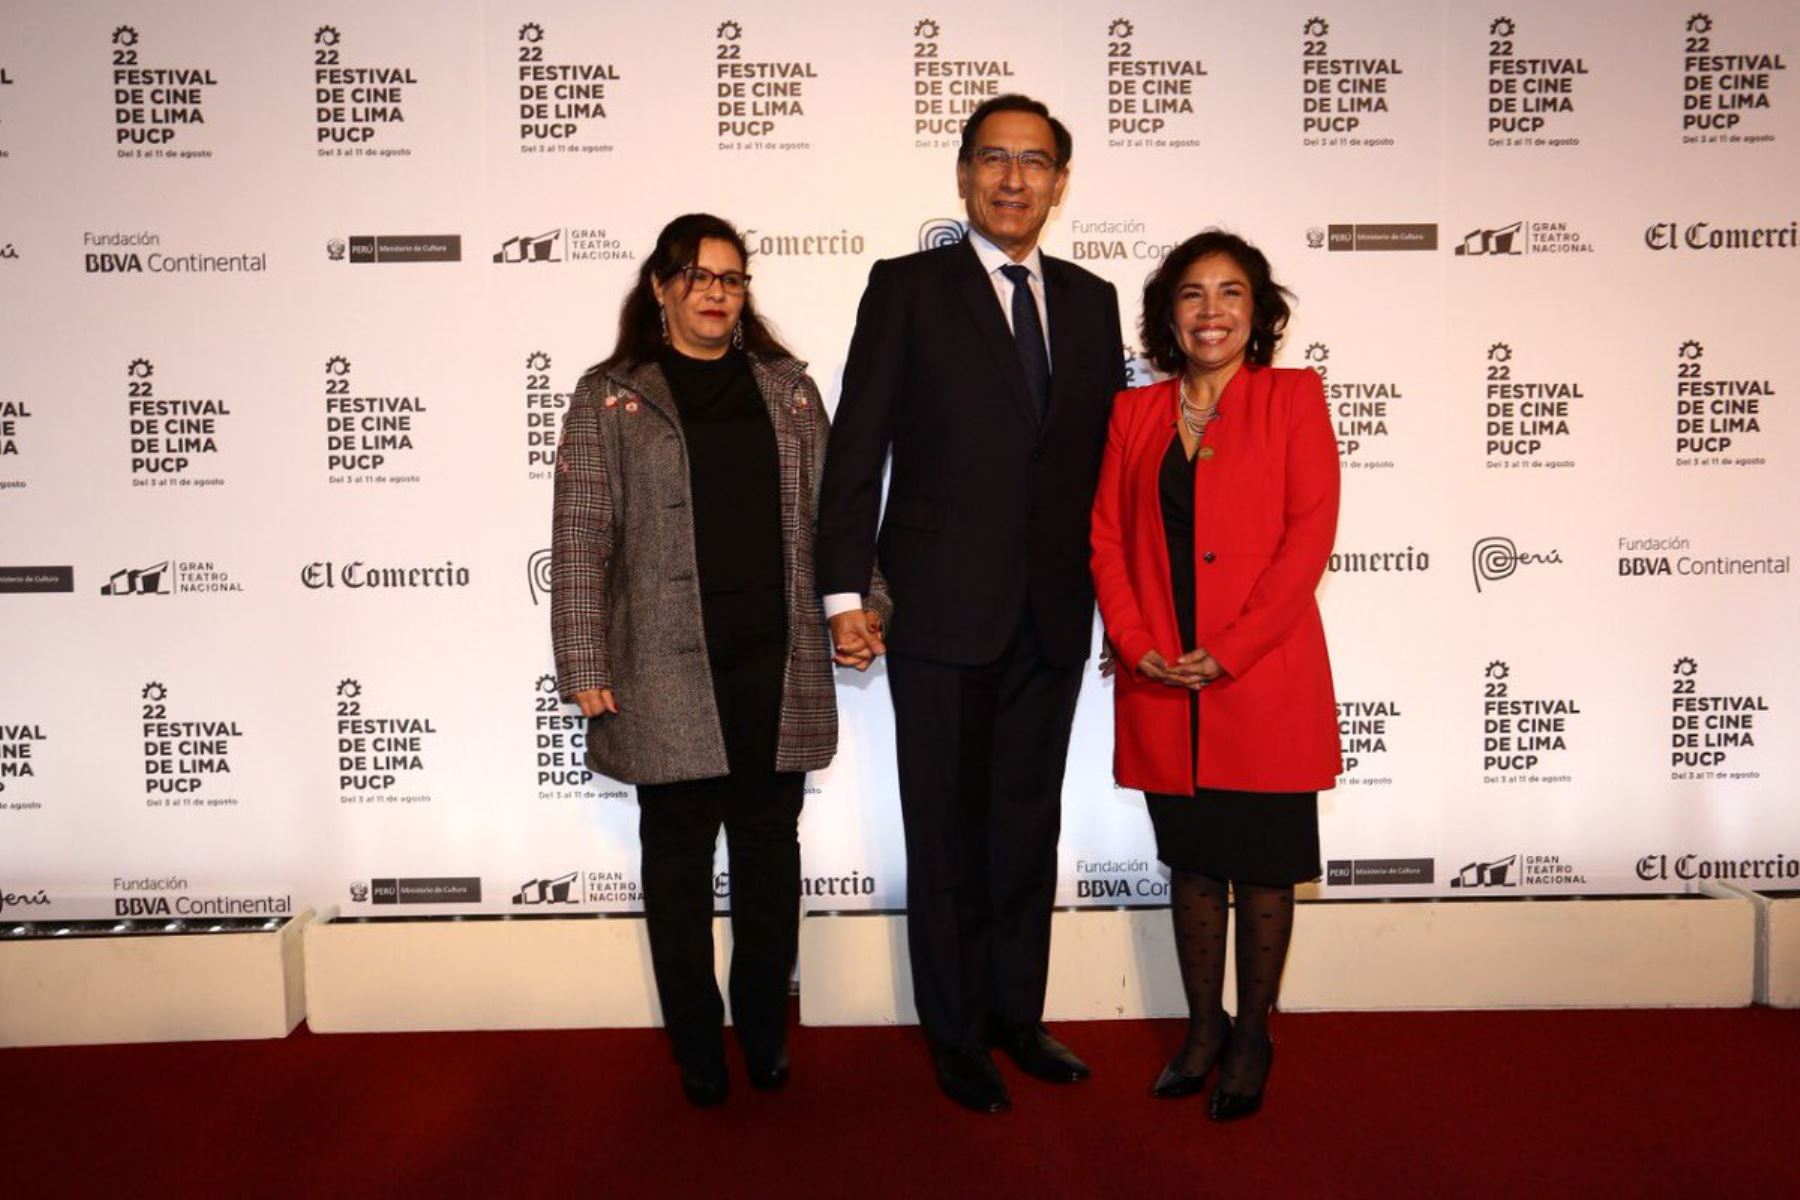 Presidente Martín Vizcarra asistió al 22° Festival de Cine de Lima.